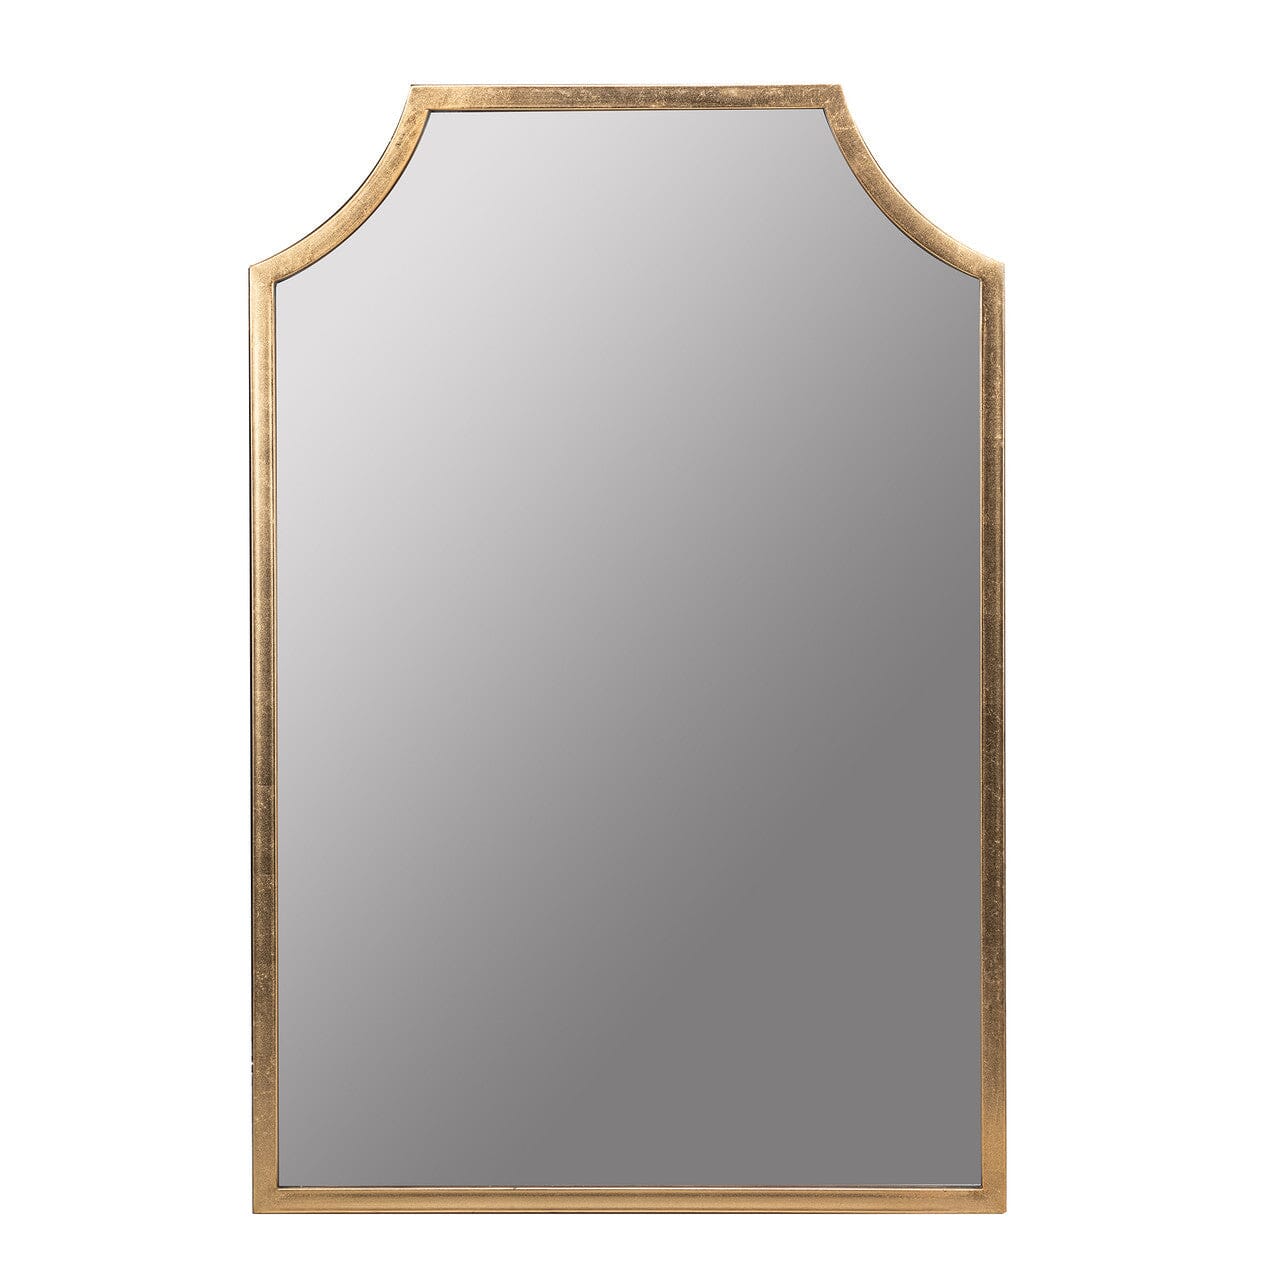 Simone Gold Mirror Mirrors 